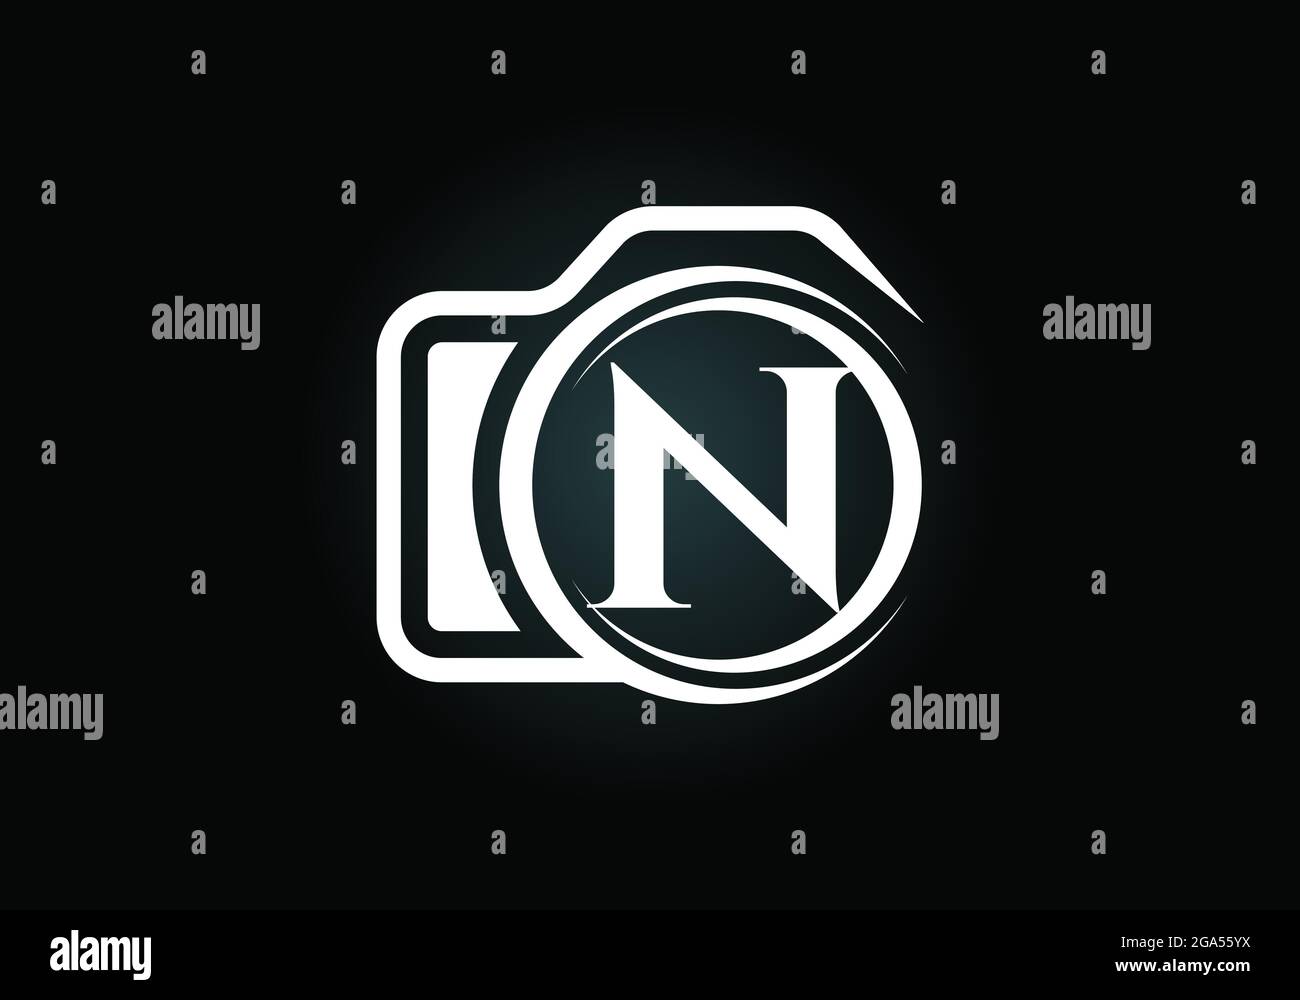 Lettera iniziale con N caratteri monogrammi con icona di una telecamera. Immagine vettoriale del logo fotografico. Design moderno del logo per il settore della fotografia e l'azienda Illustrazione Vettoriale